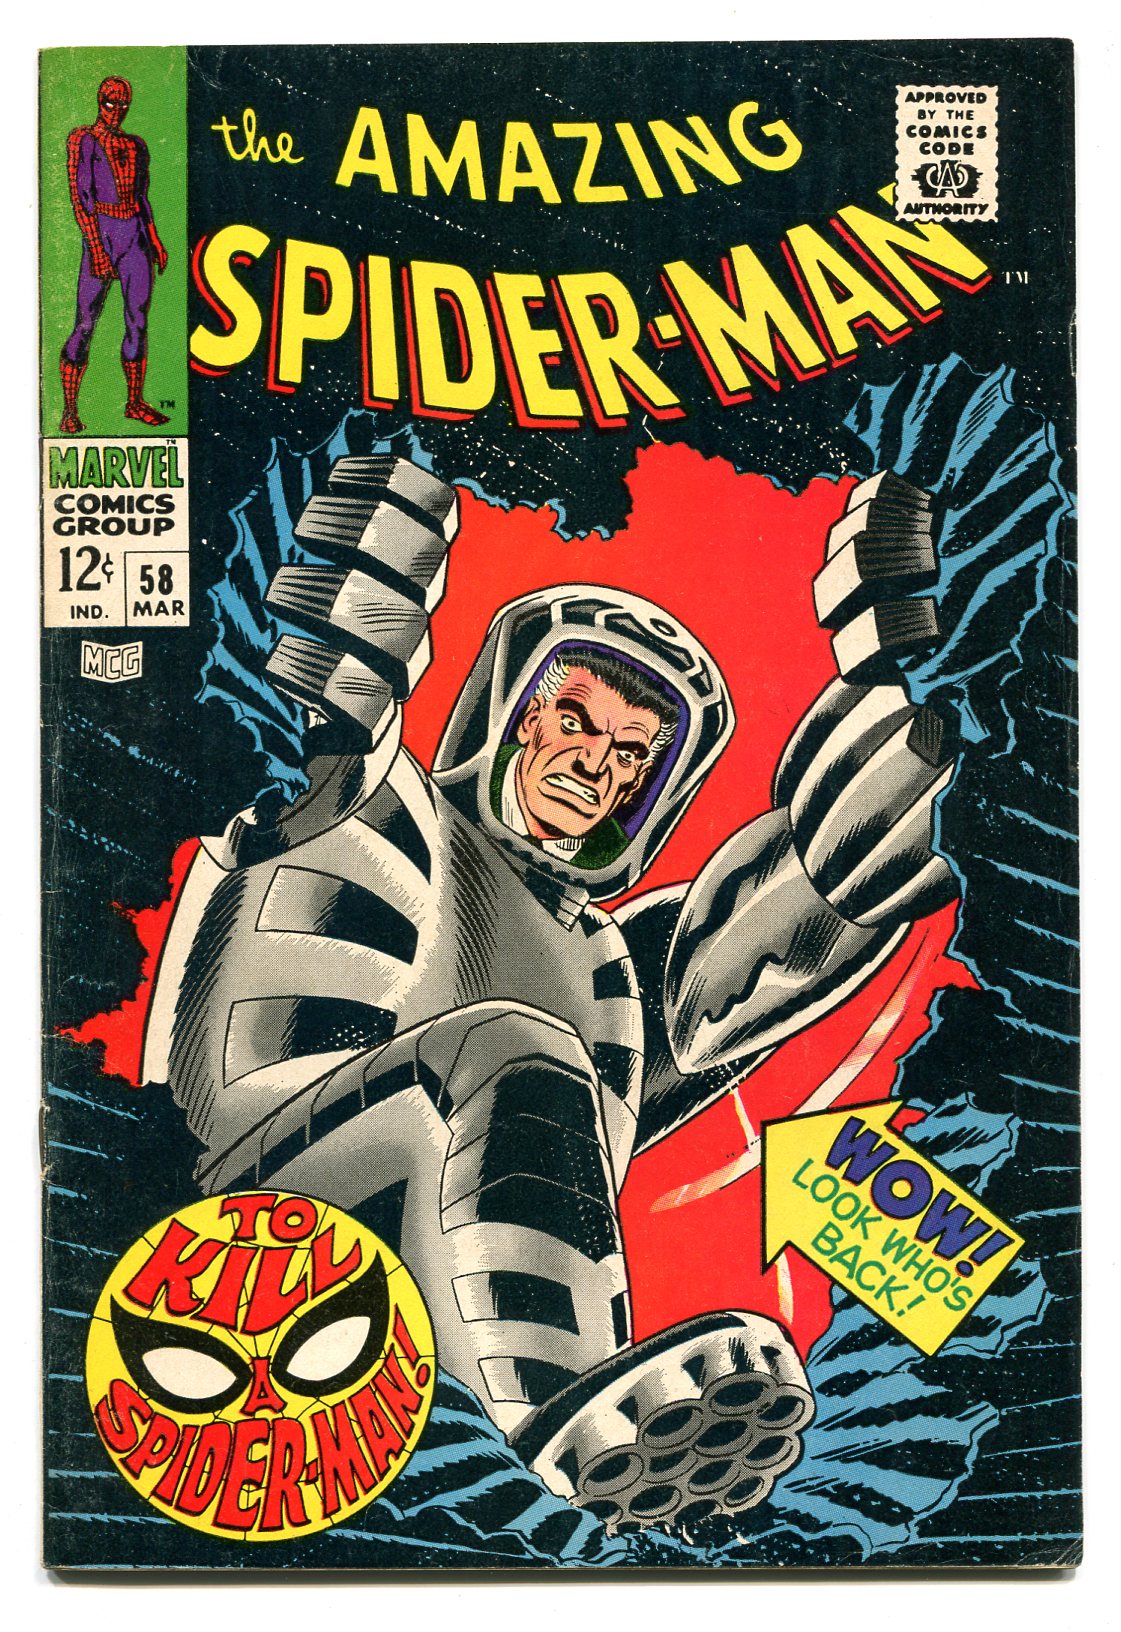 AMAZING SPIDER-MAN